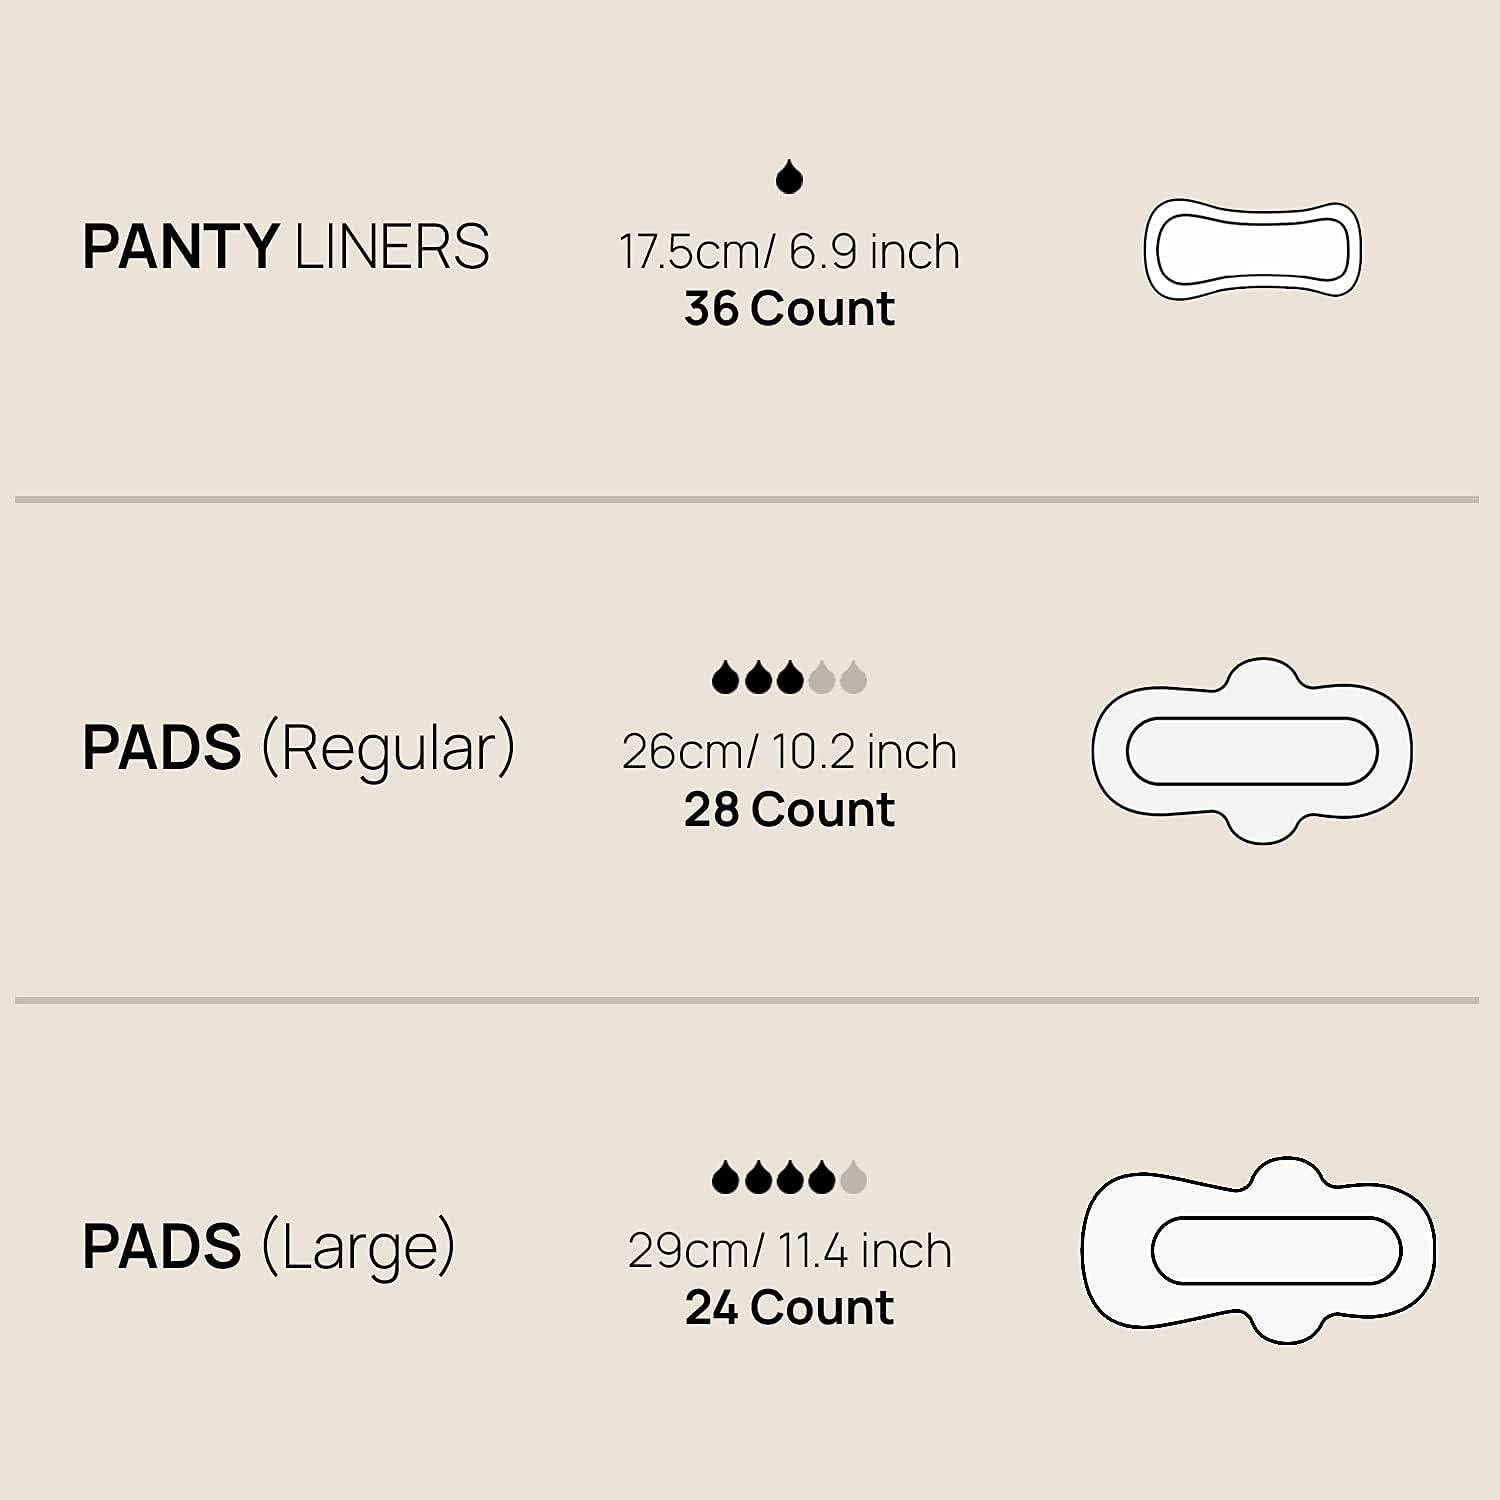  SANDIS Premium 100% Organic Panty Liners - Chemical